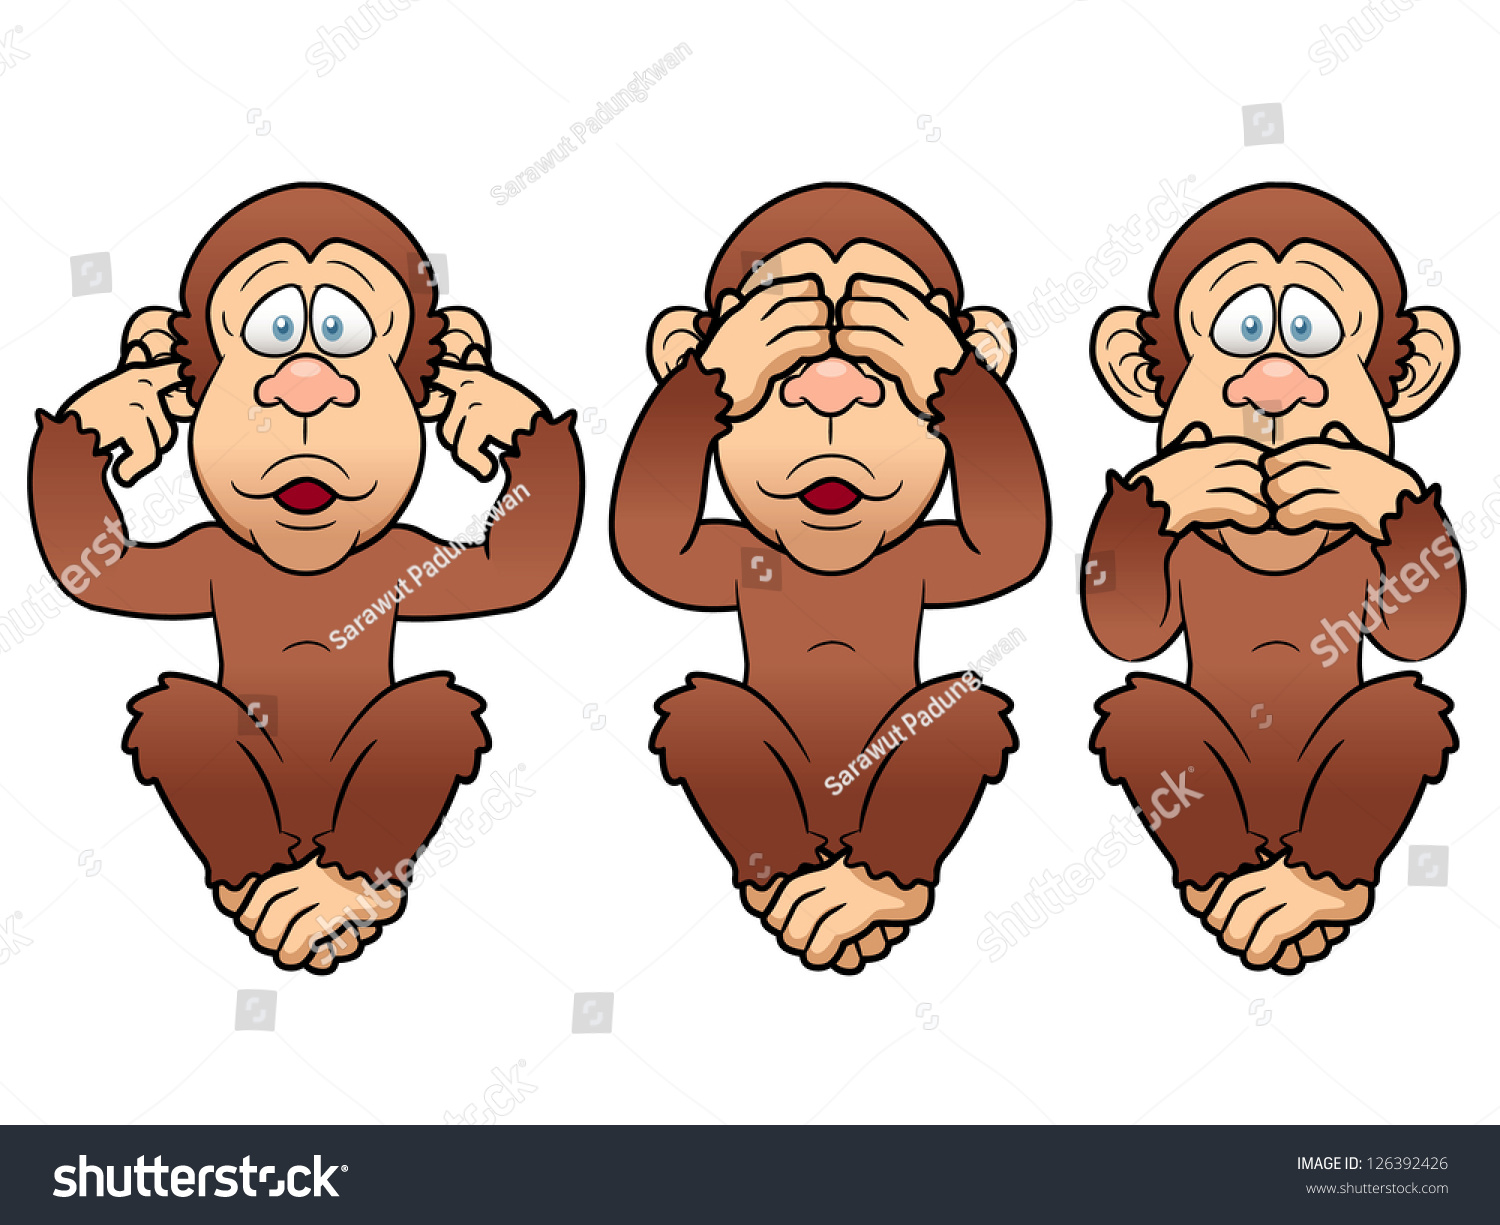 stock-vector-illustration-of-cartoon-three-monkeys-see-hear-speak-no-evil-126392426.jpg